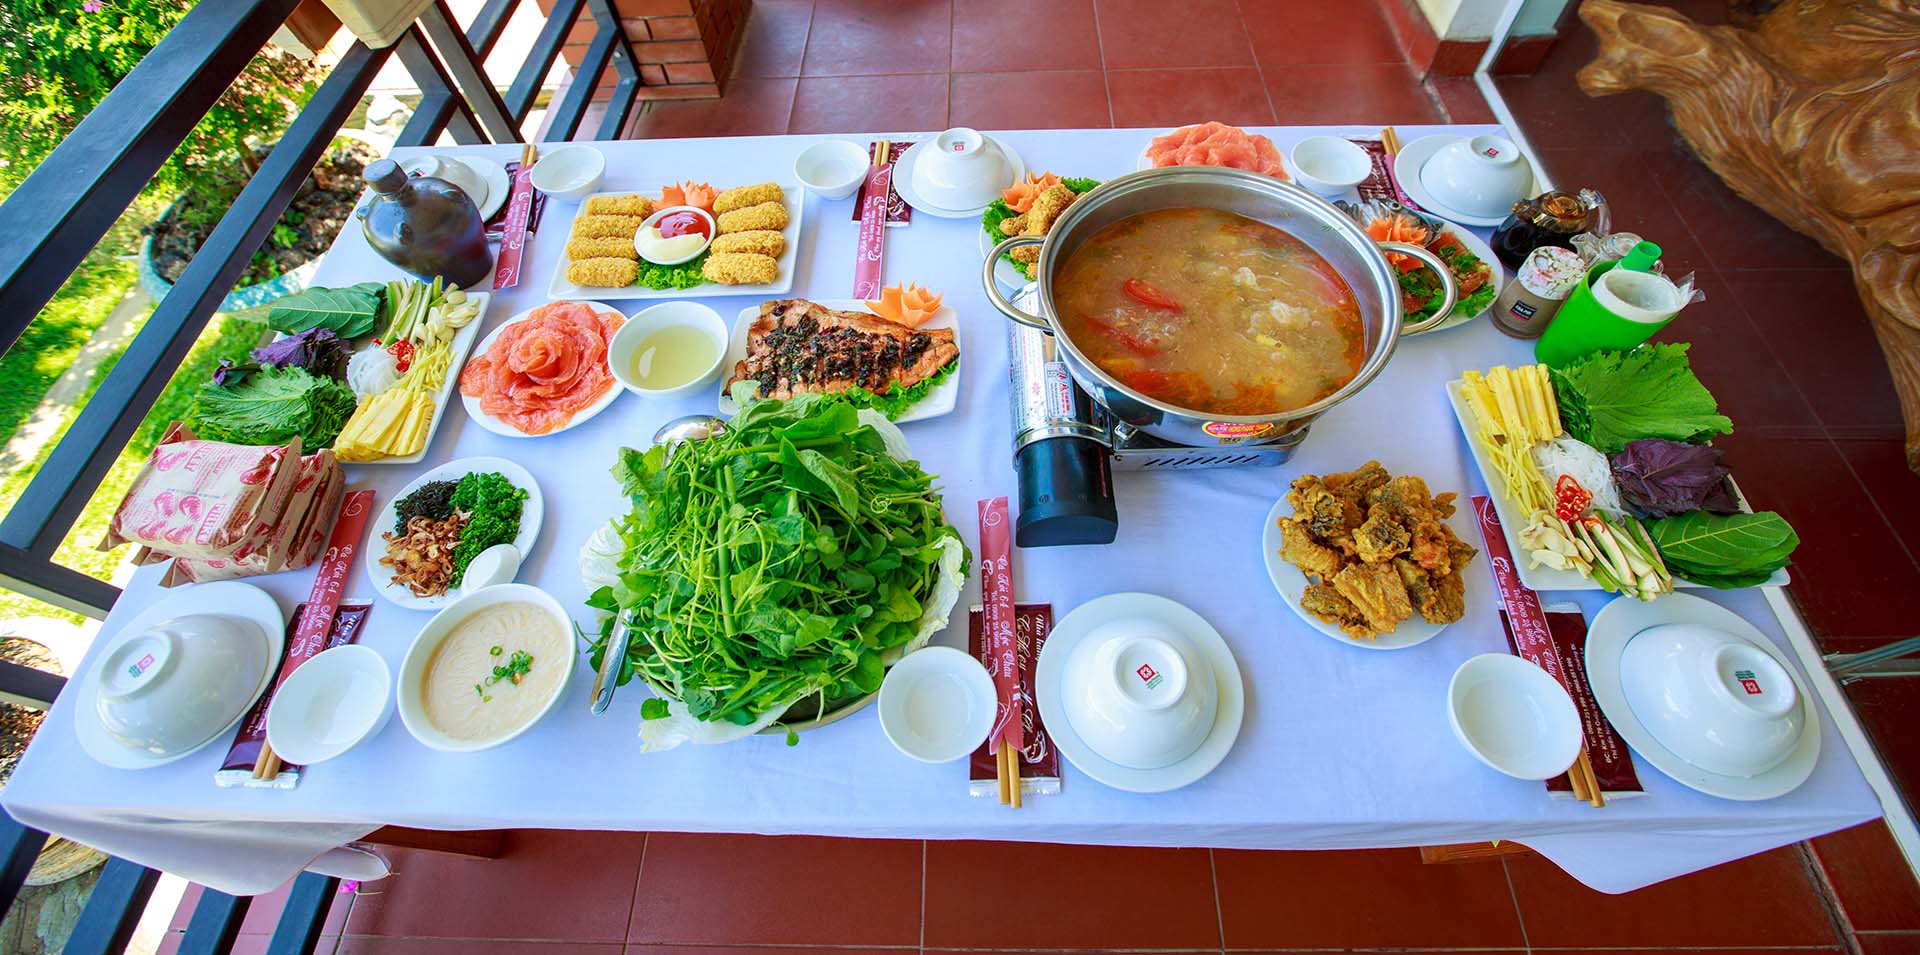 Set bàn ăn tại nhà hàng Cá Hồi 64 Mộc Châu